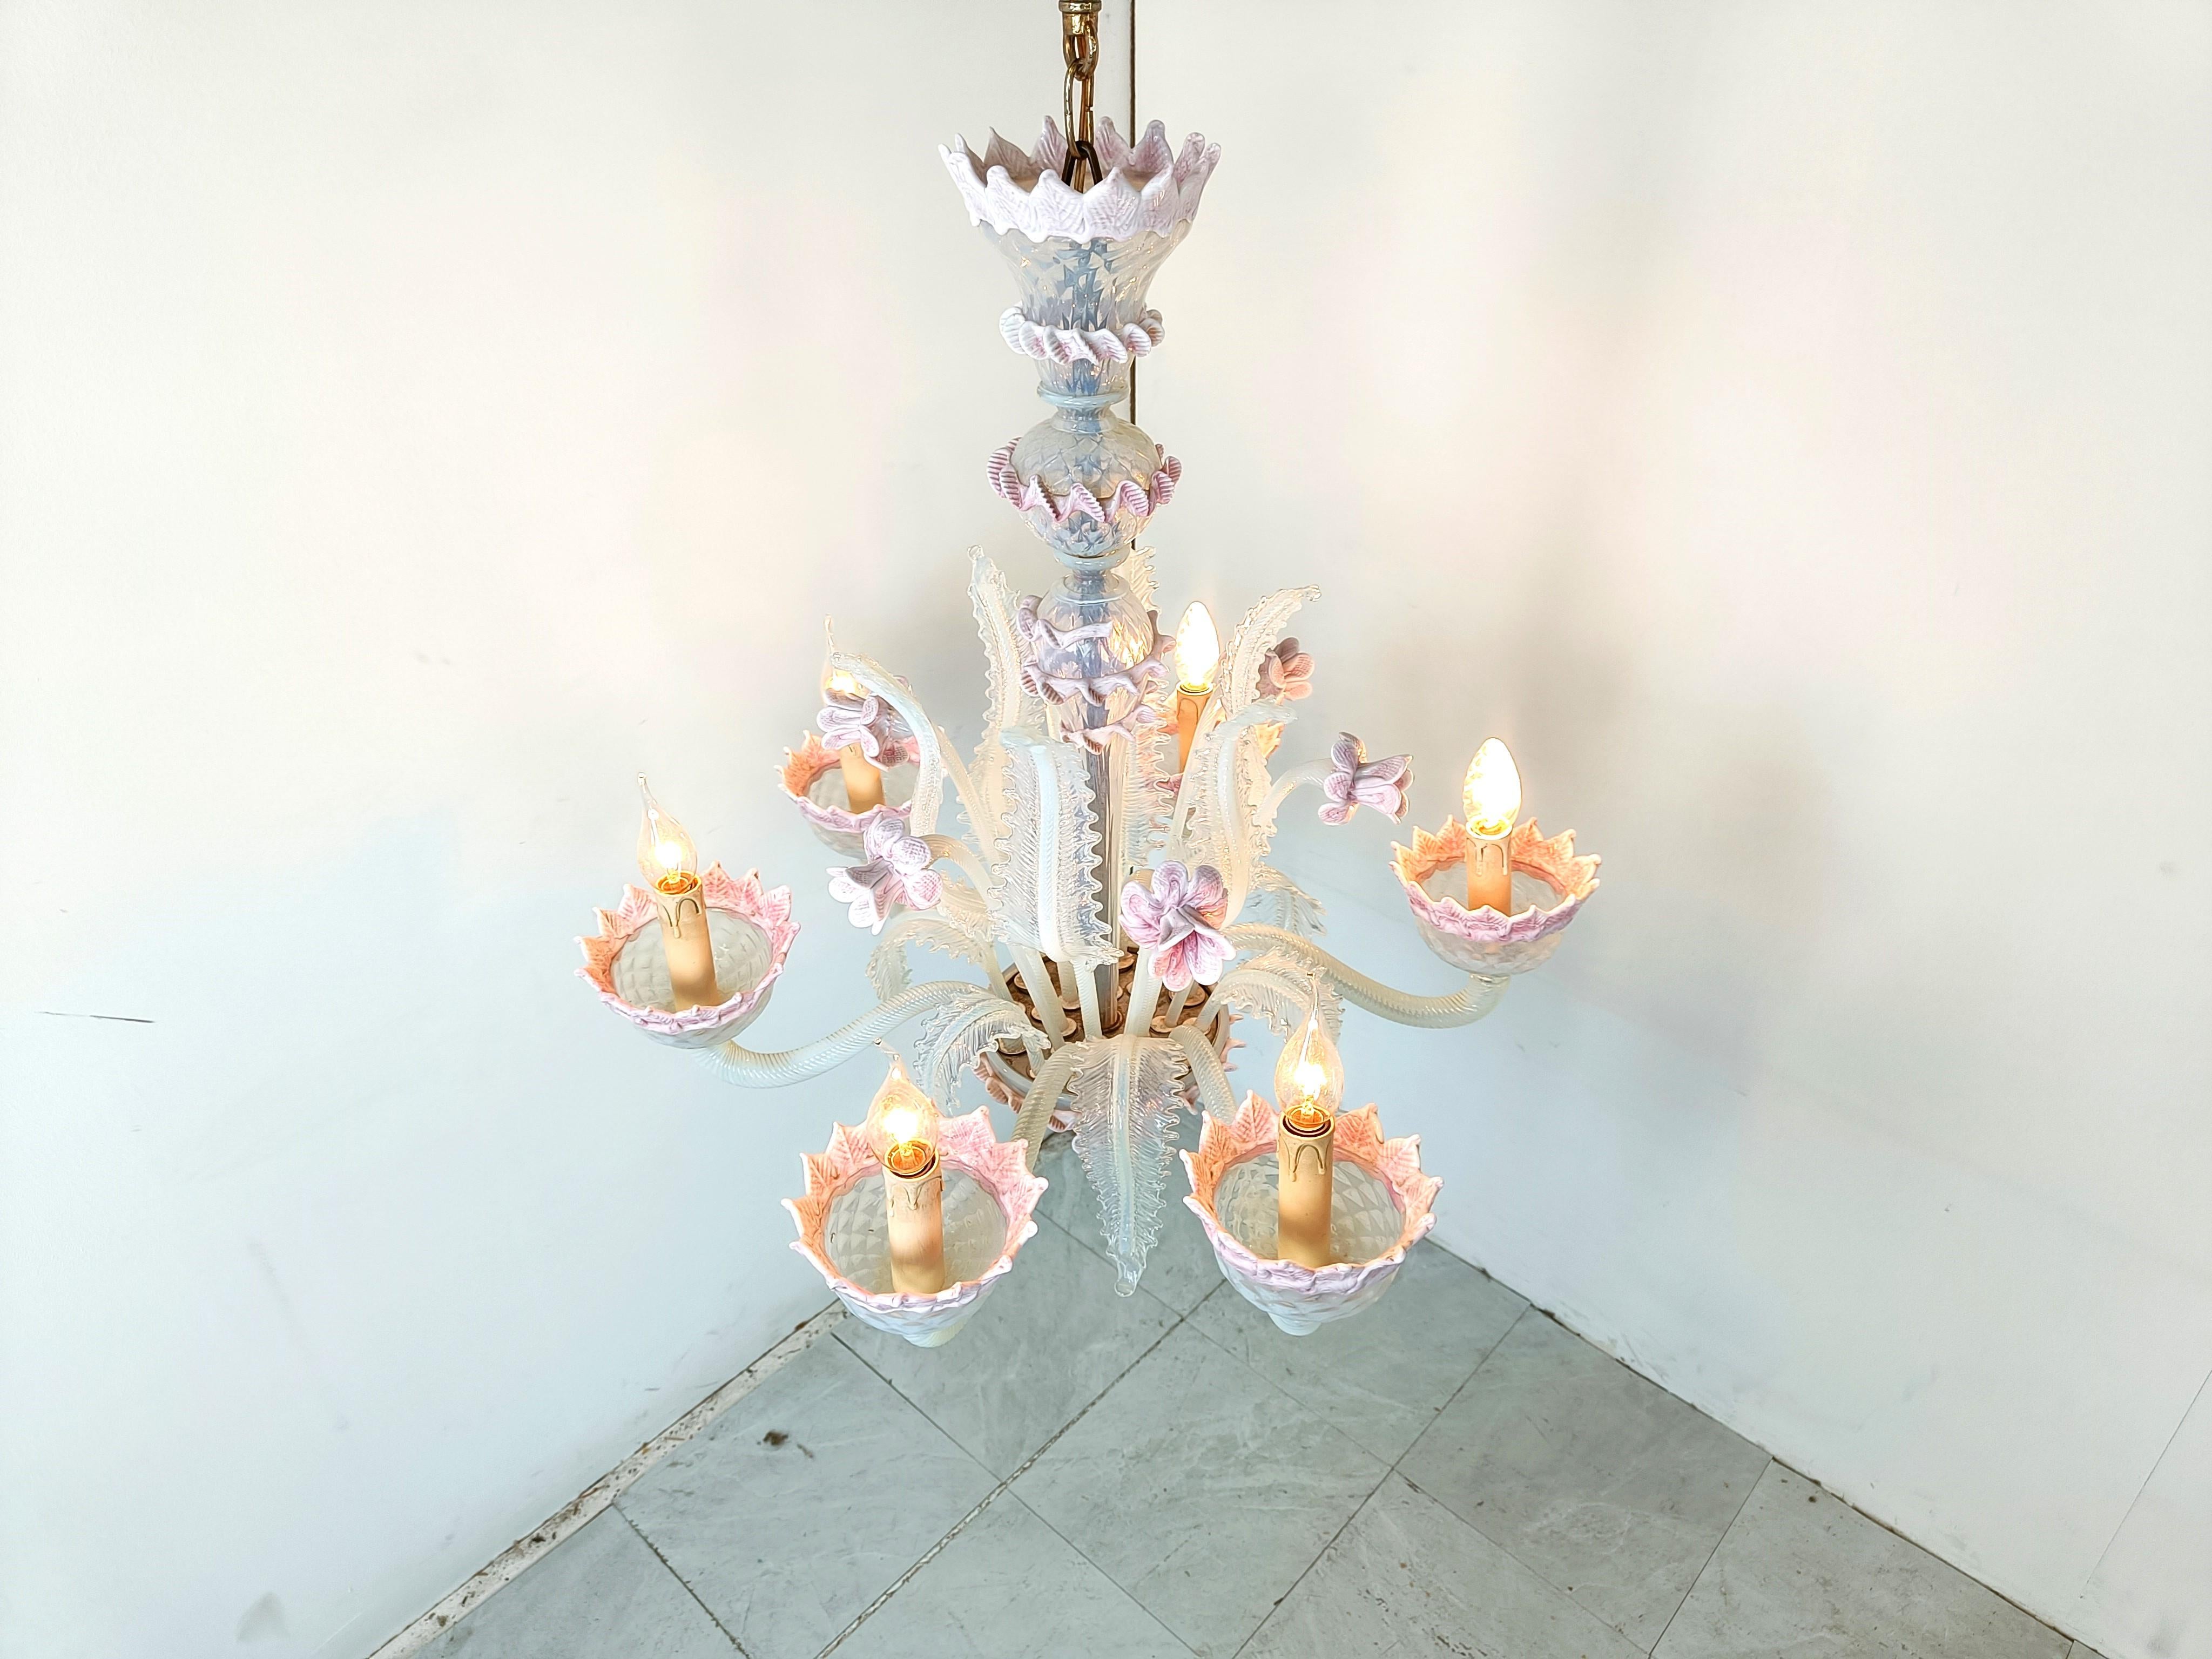 Superbe lustre en verre de Murano datant du milieu du siècle dernier.

Il se compose de 6 bras avec des lampes candélabres.

Le lustre est très élégant et comporte de magnifiques fleurs et feuilles faites à la main.

Complet et en bon état, testé et